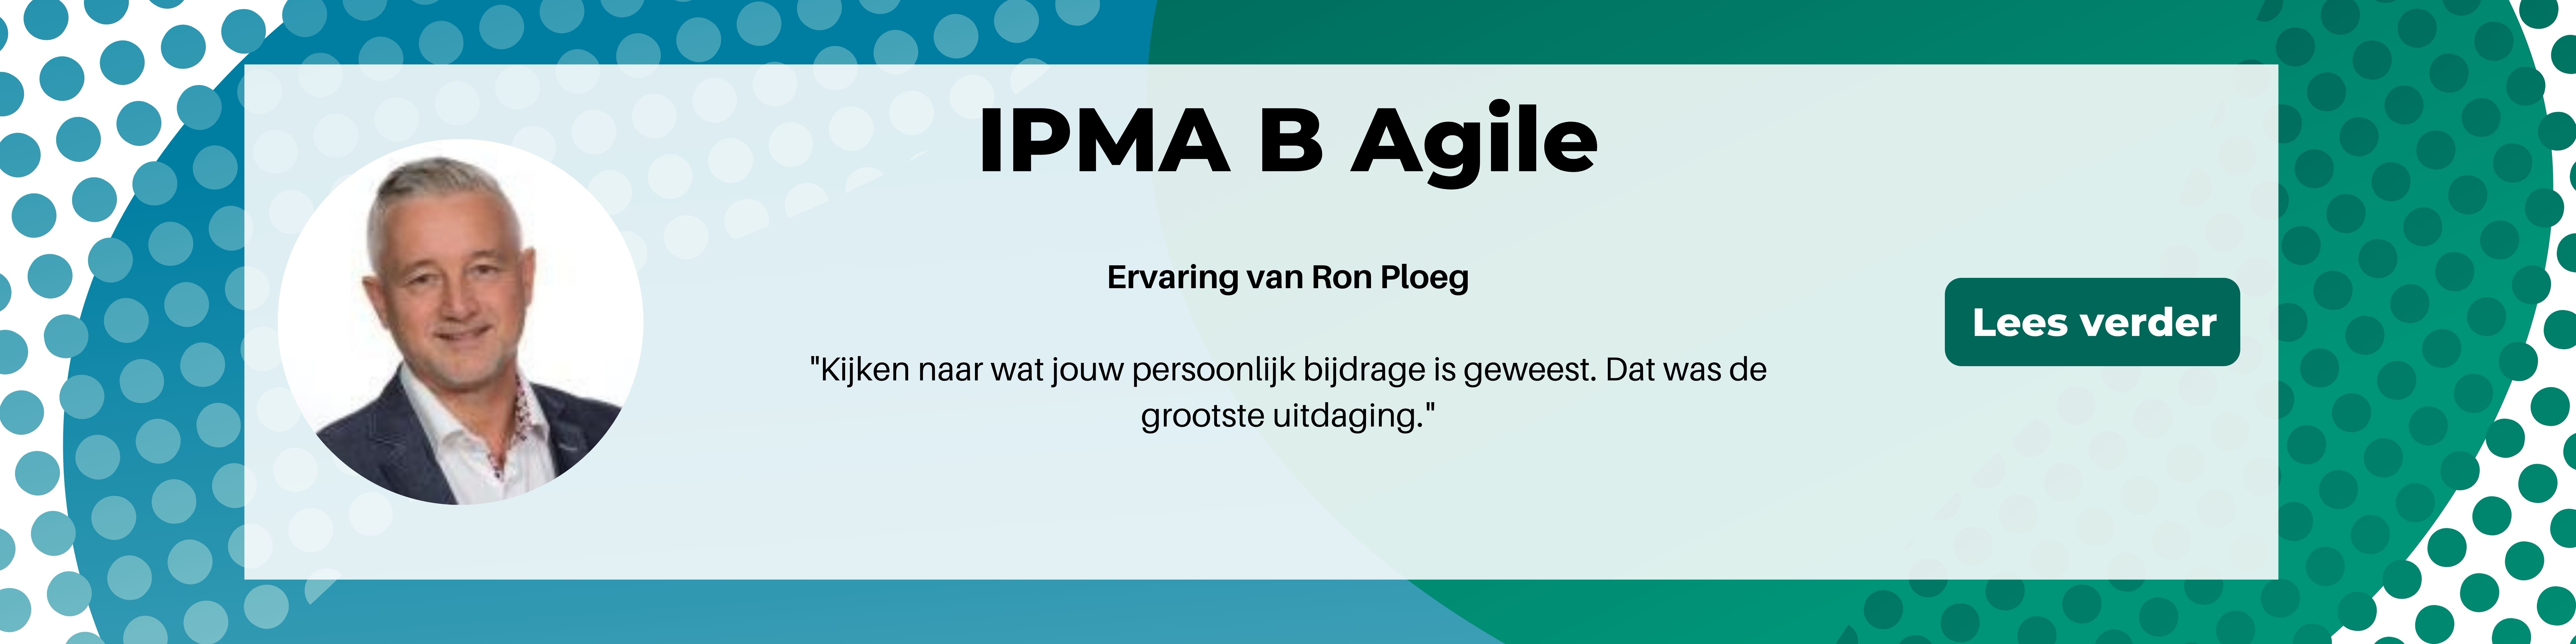 Ervaring IPMA B Agile